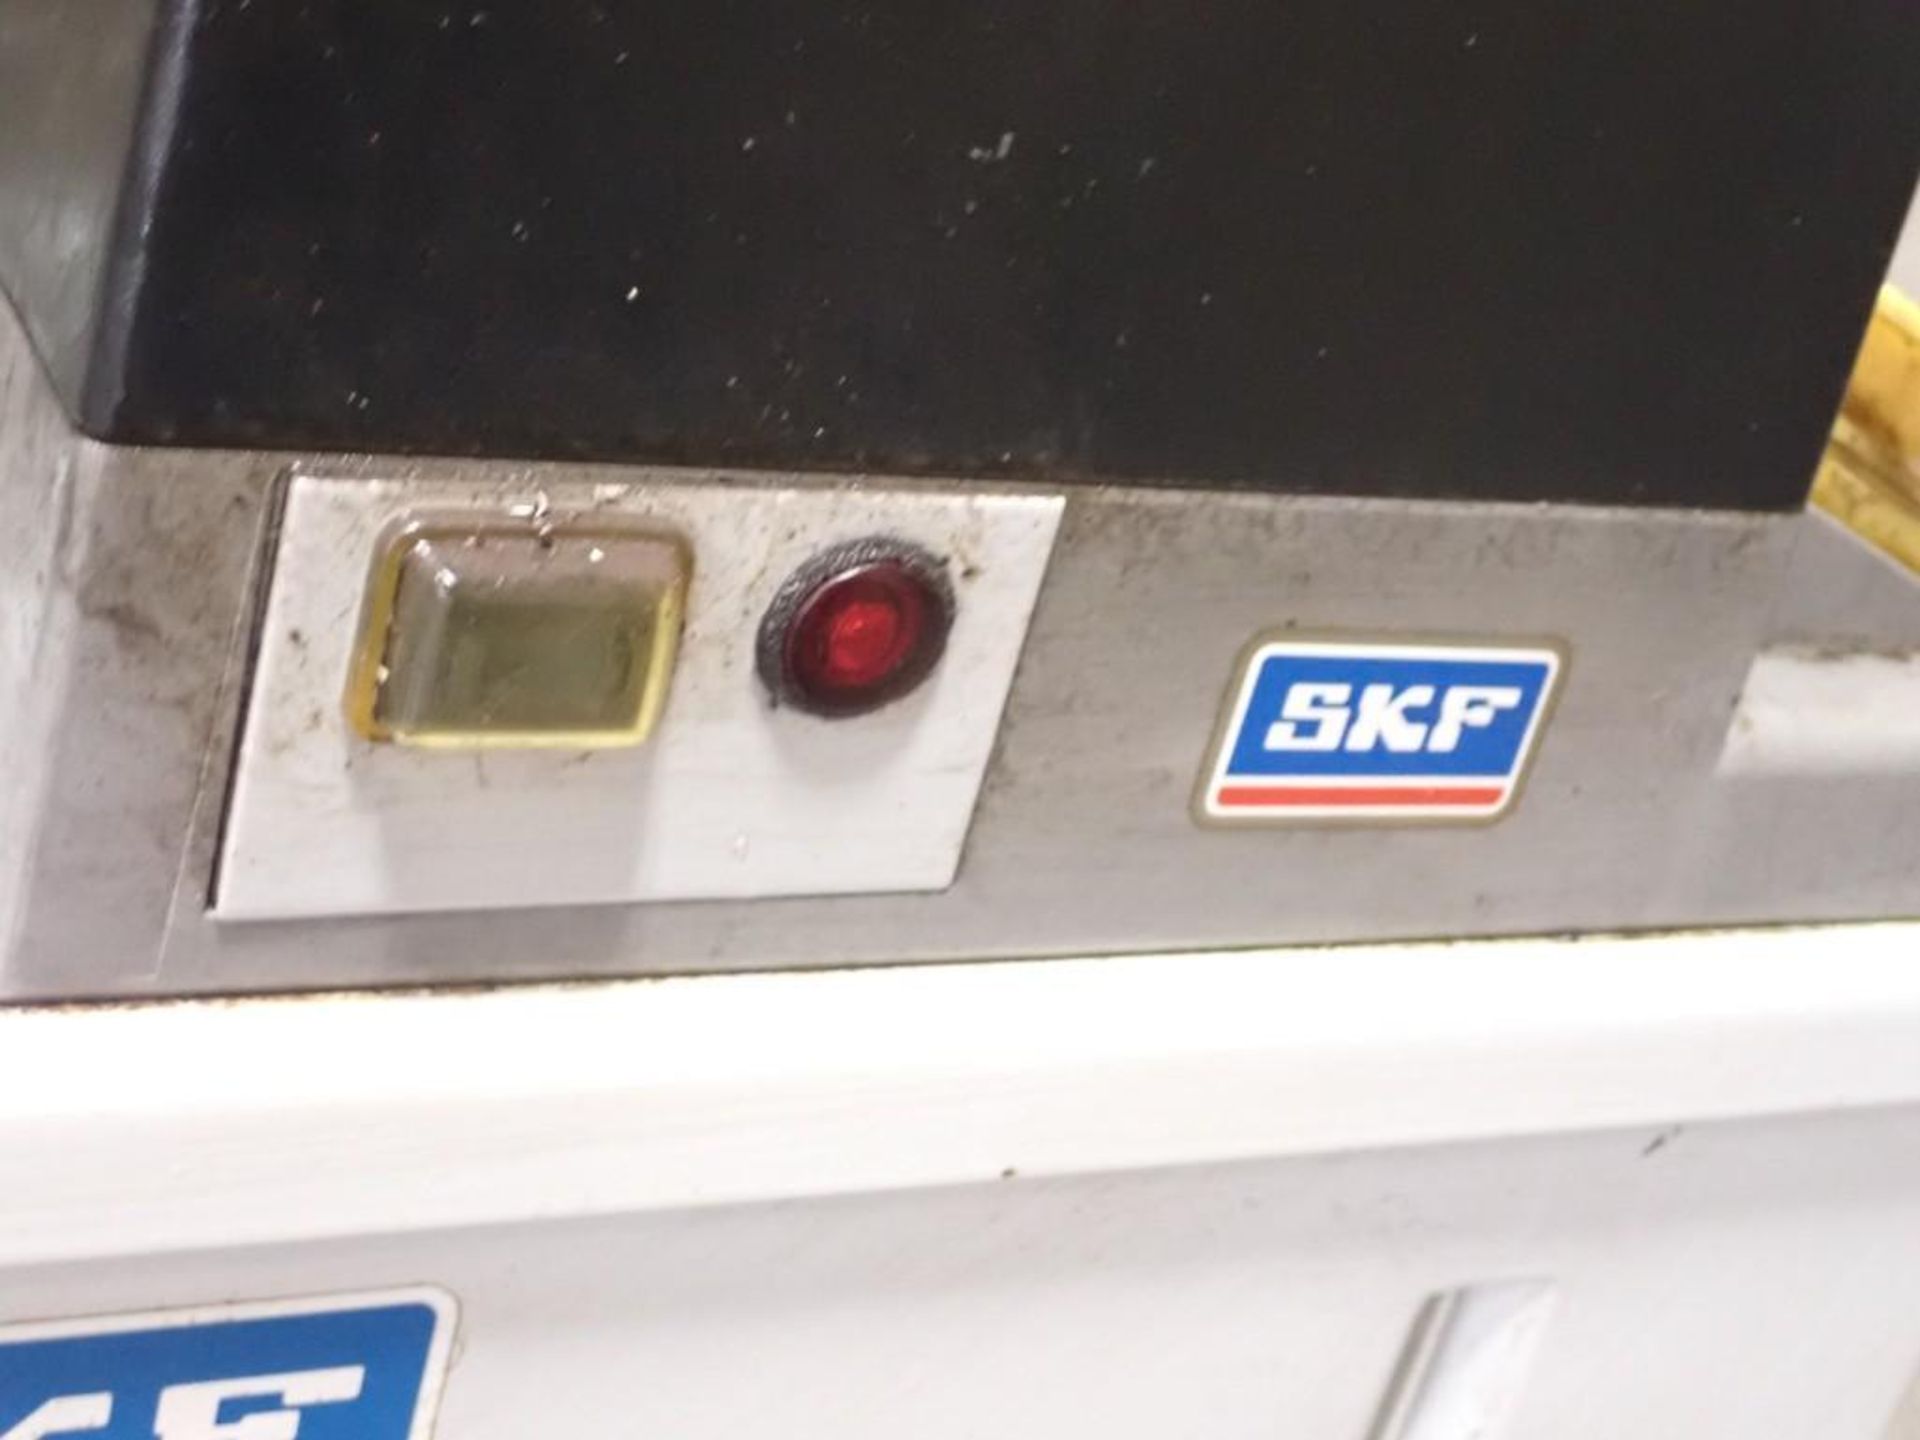 SKF #MKU2-BW4-20003-V2+428 Lubrication Unit - Image 3 of 8